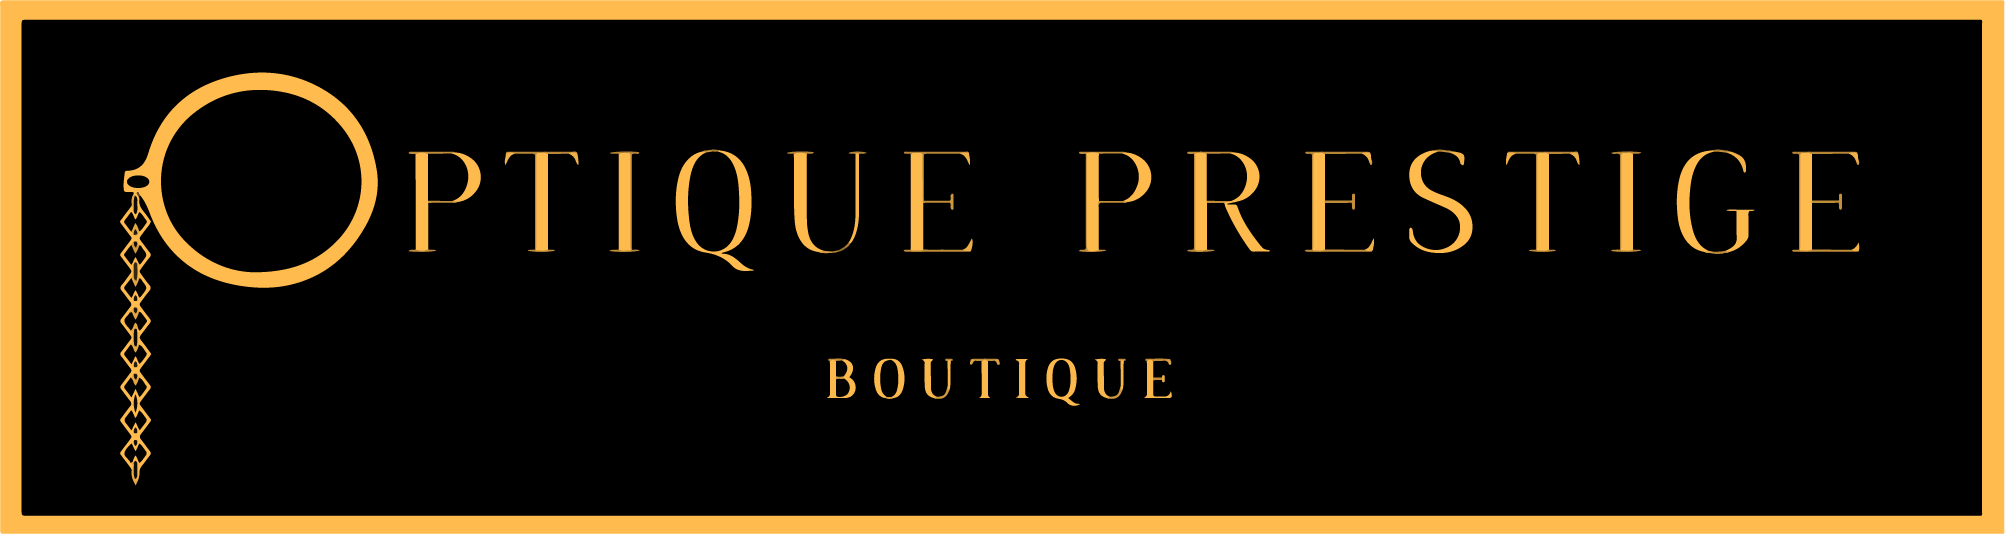 Optique Prestige Boutique